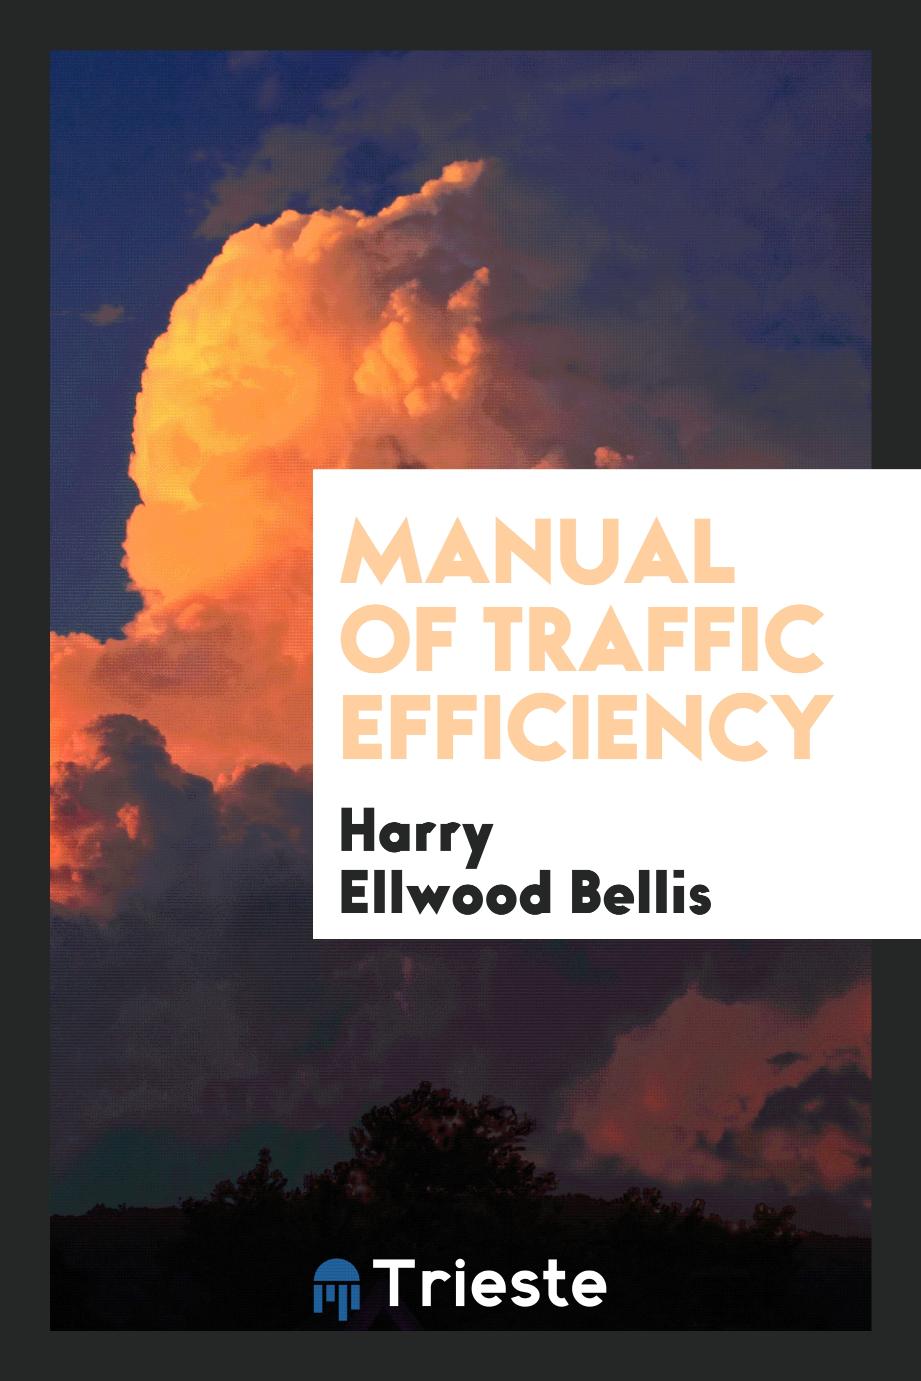 Manual of Traffic Efficiency